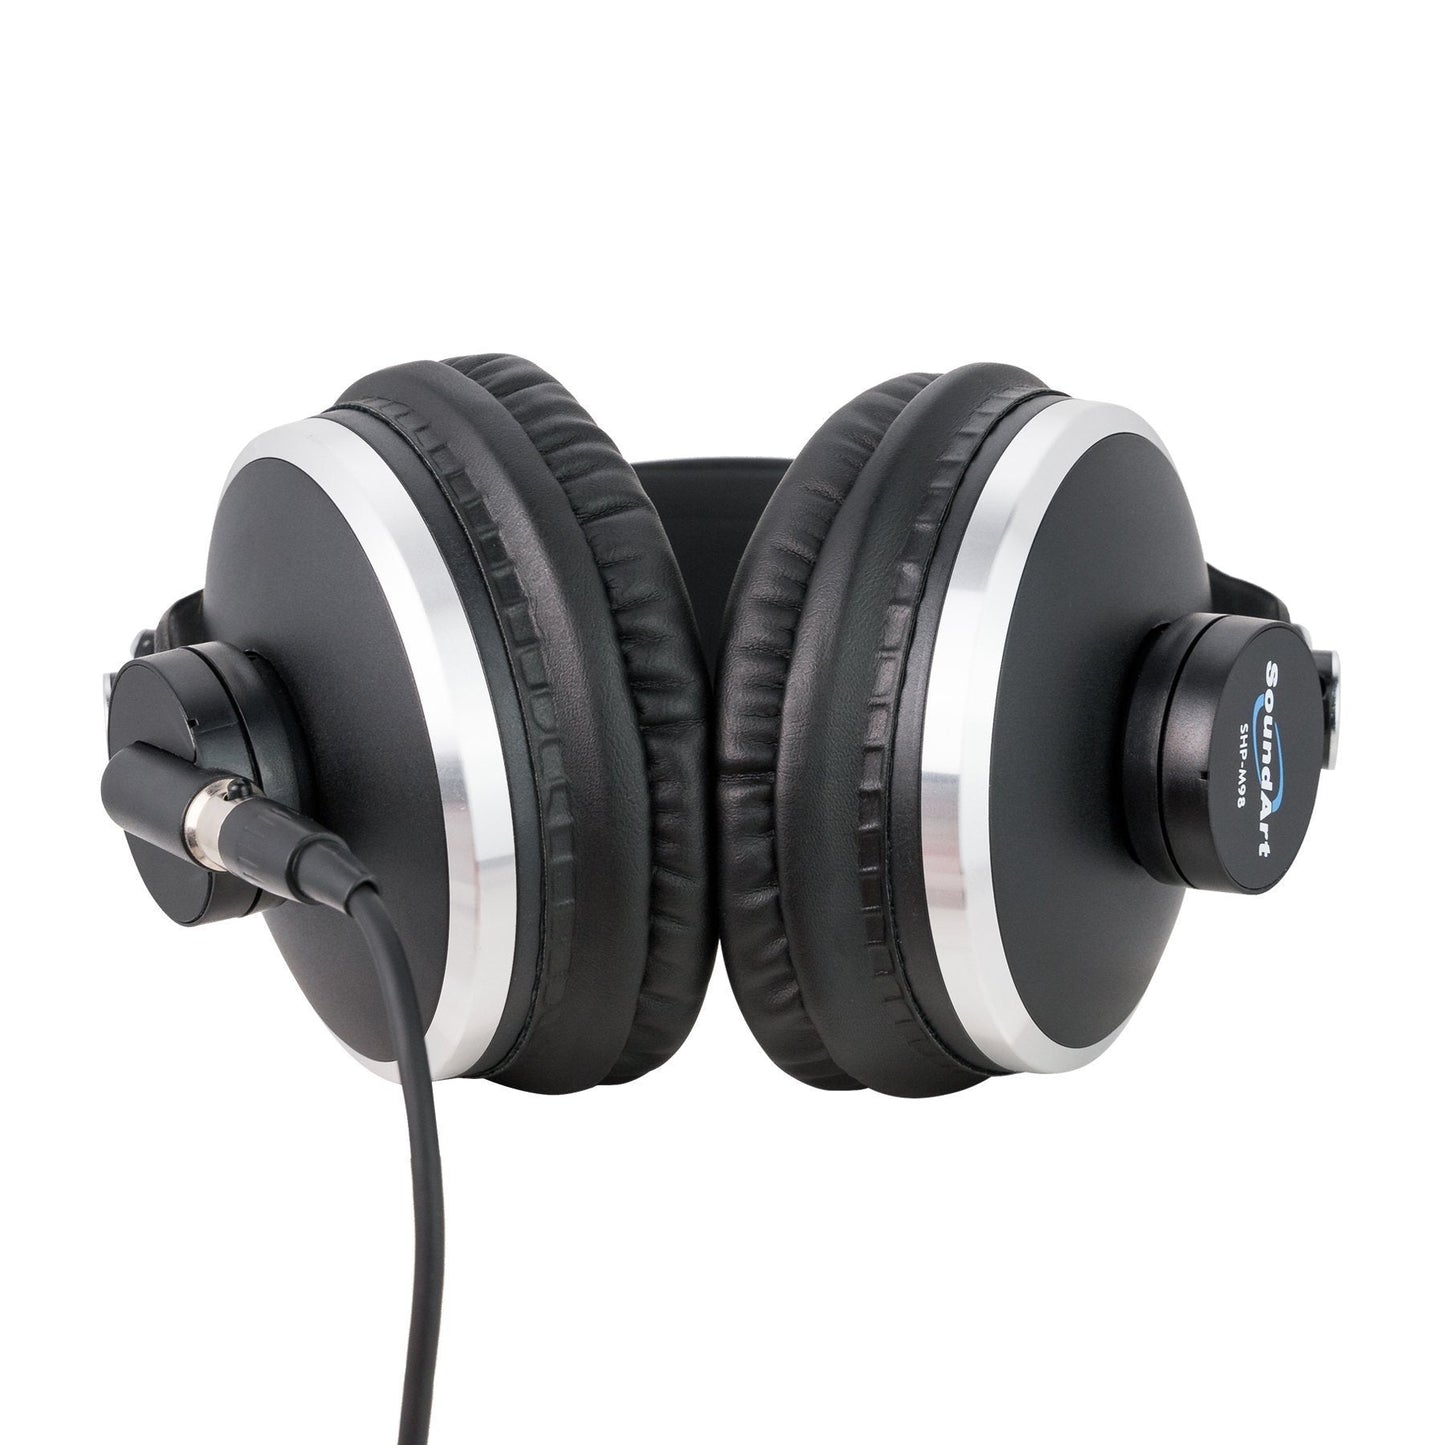 SoundArt Professional Premium Closed Back Studio Headphones